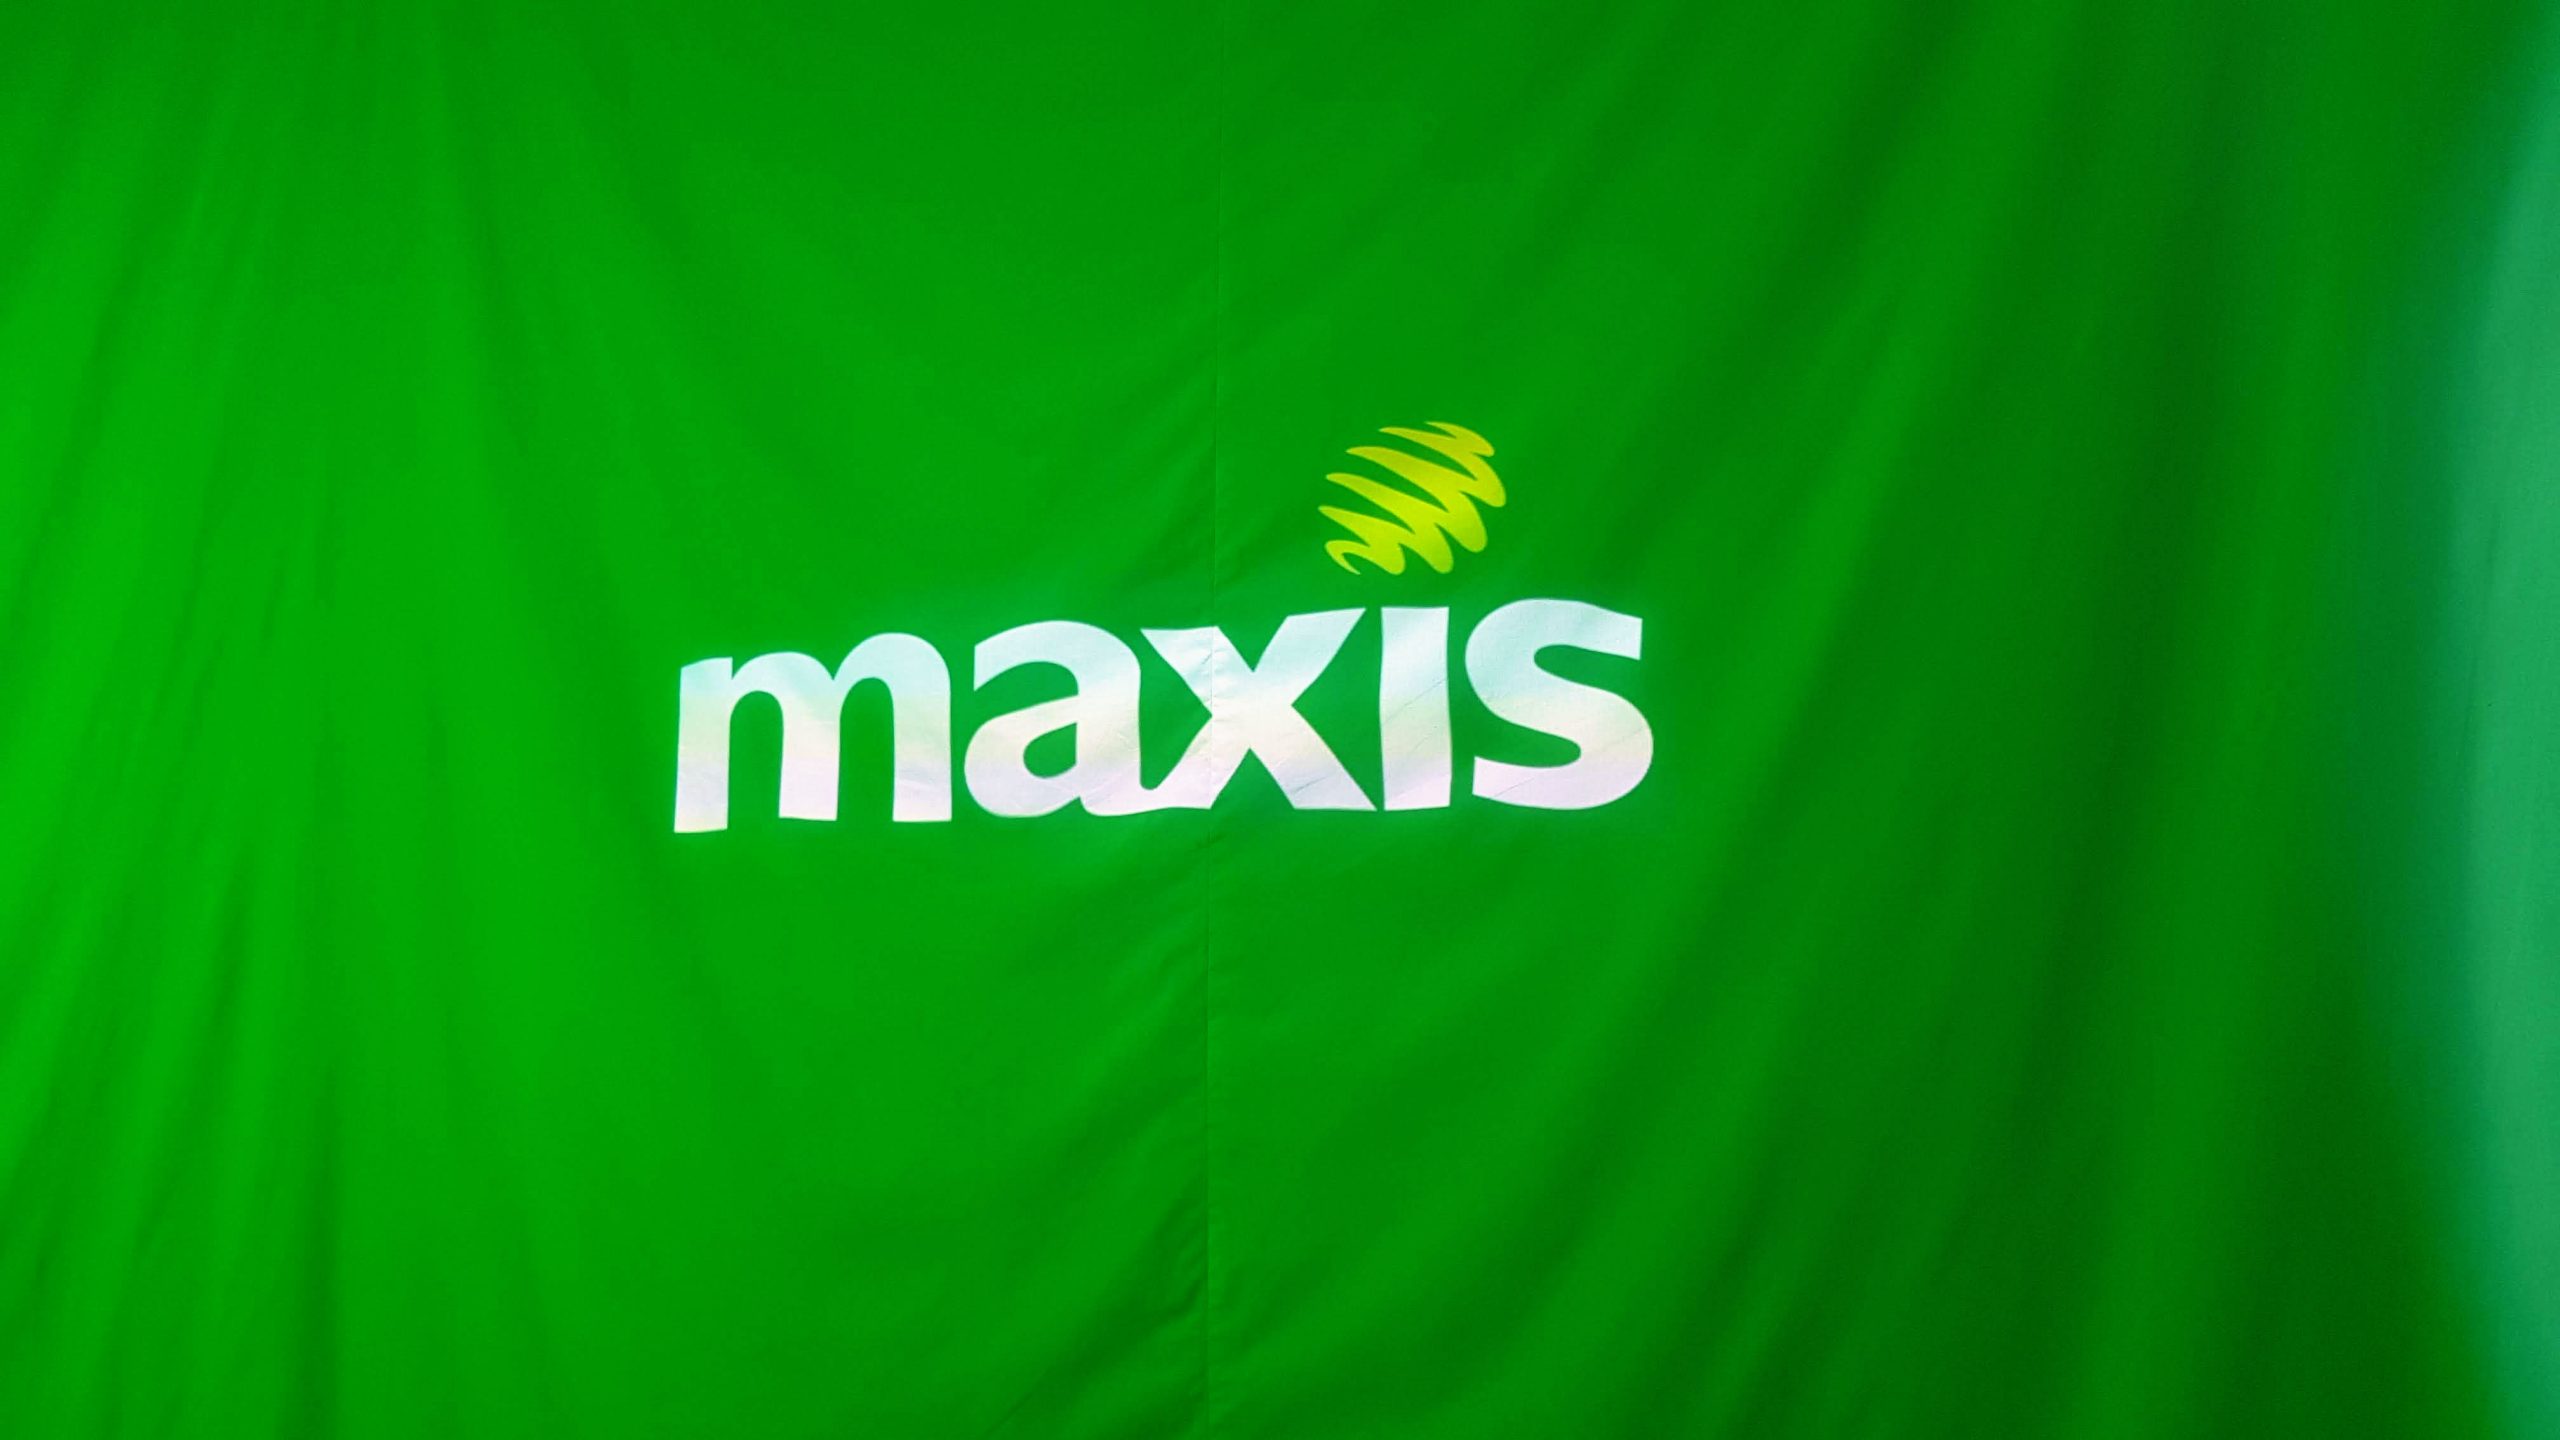 Maxis Akhirnya Bersetuju Akan Menggunakan Rangkaian DNB Untuk 5G